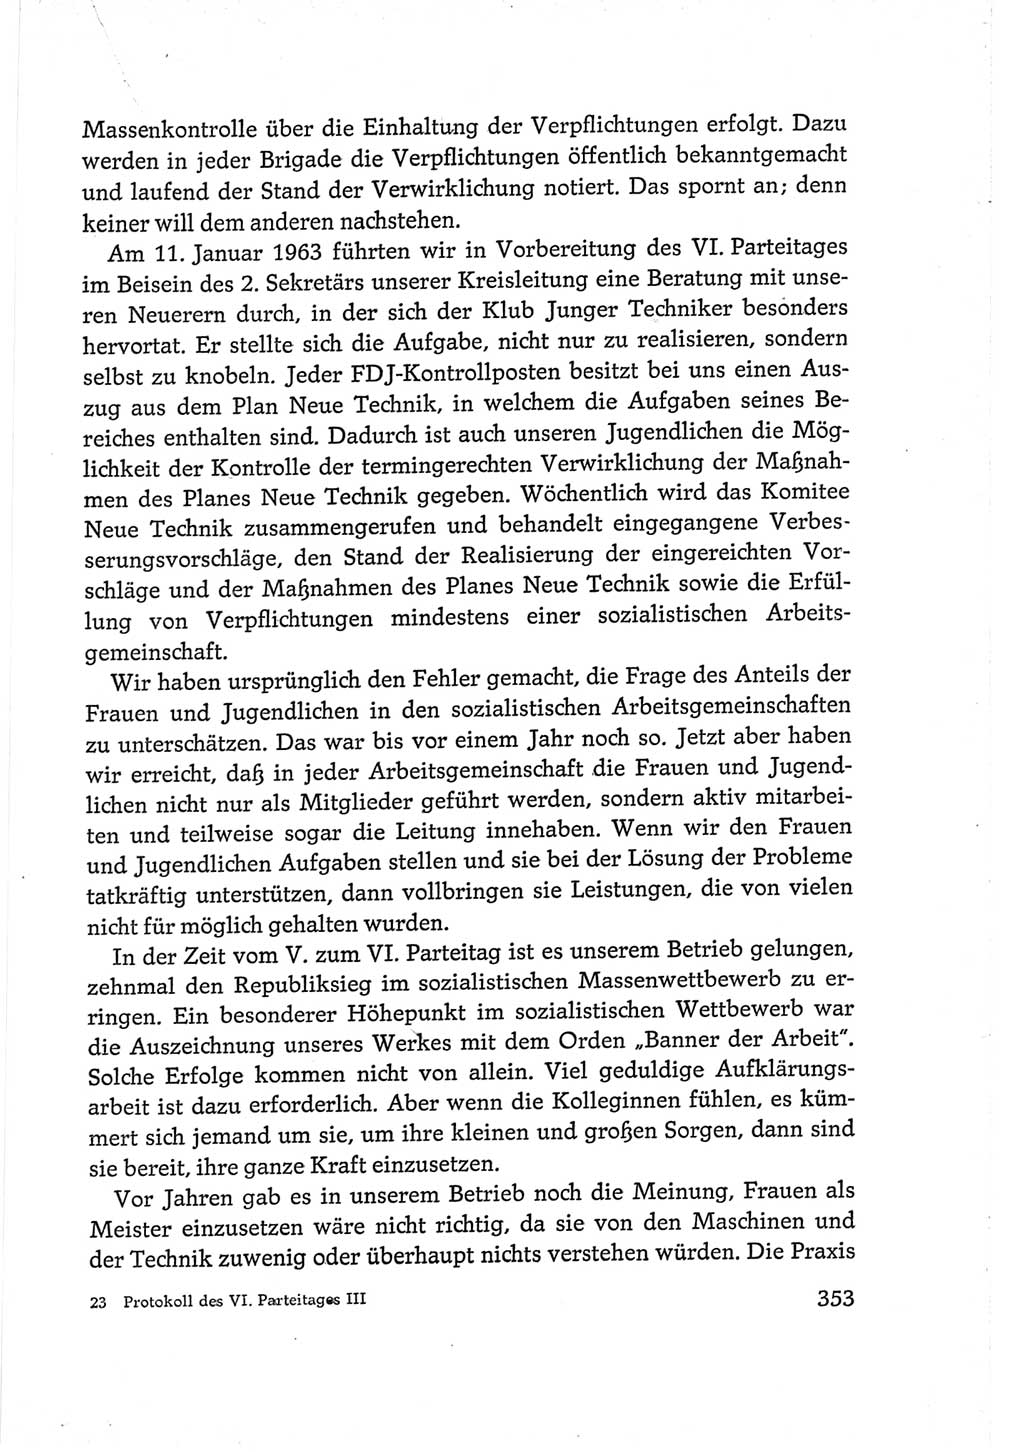 Protokoll der Verhandlungen des Ⅵ. Parteitages der Sozialistischen Einheitspartei Deutschlands (SED) [Deutsche Demokratische Republik (DDR)] 1963, Band Ⅲ, Seite 353 (Prot. Verh. Ⅵ. PT SED DDR 1963, Bd. Ⅲ, S. 353)